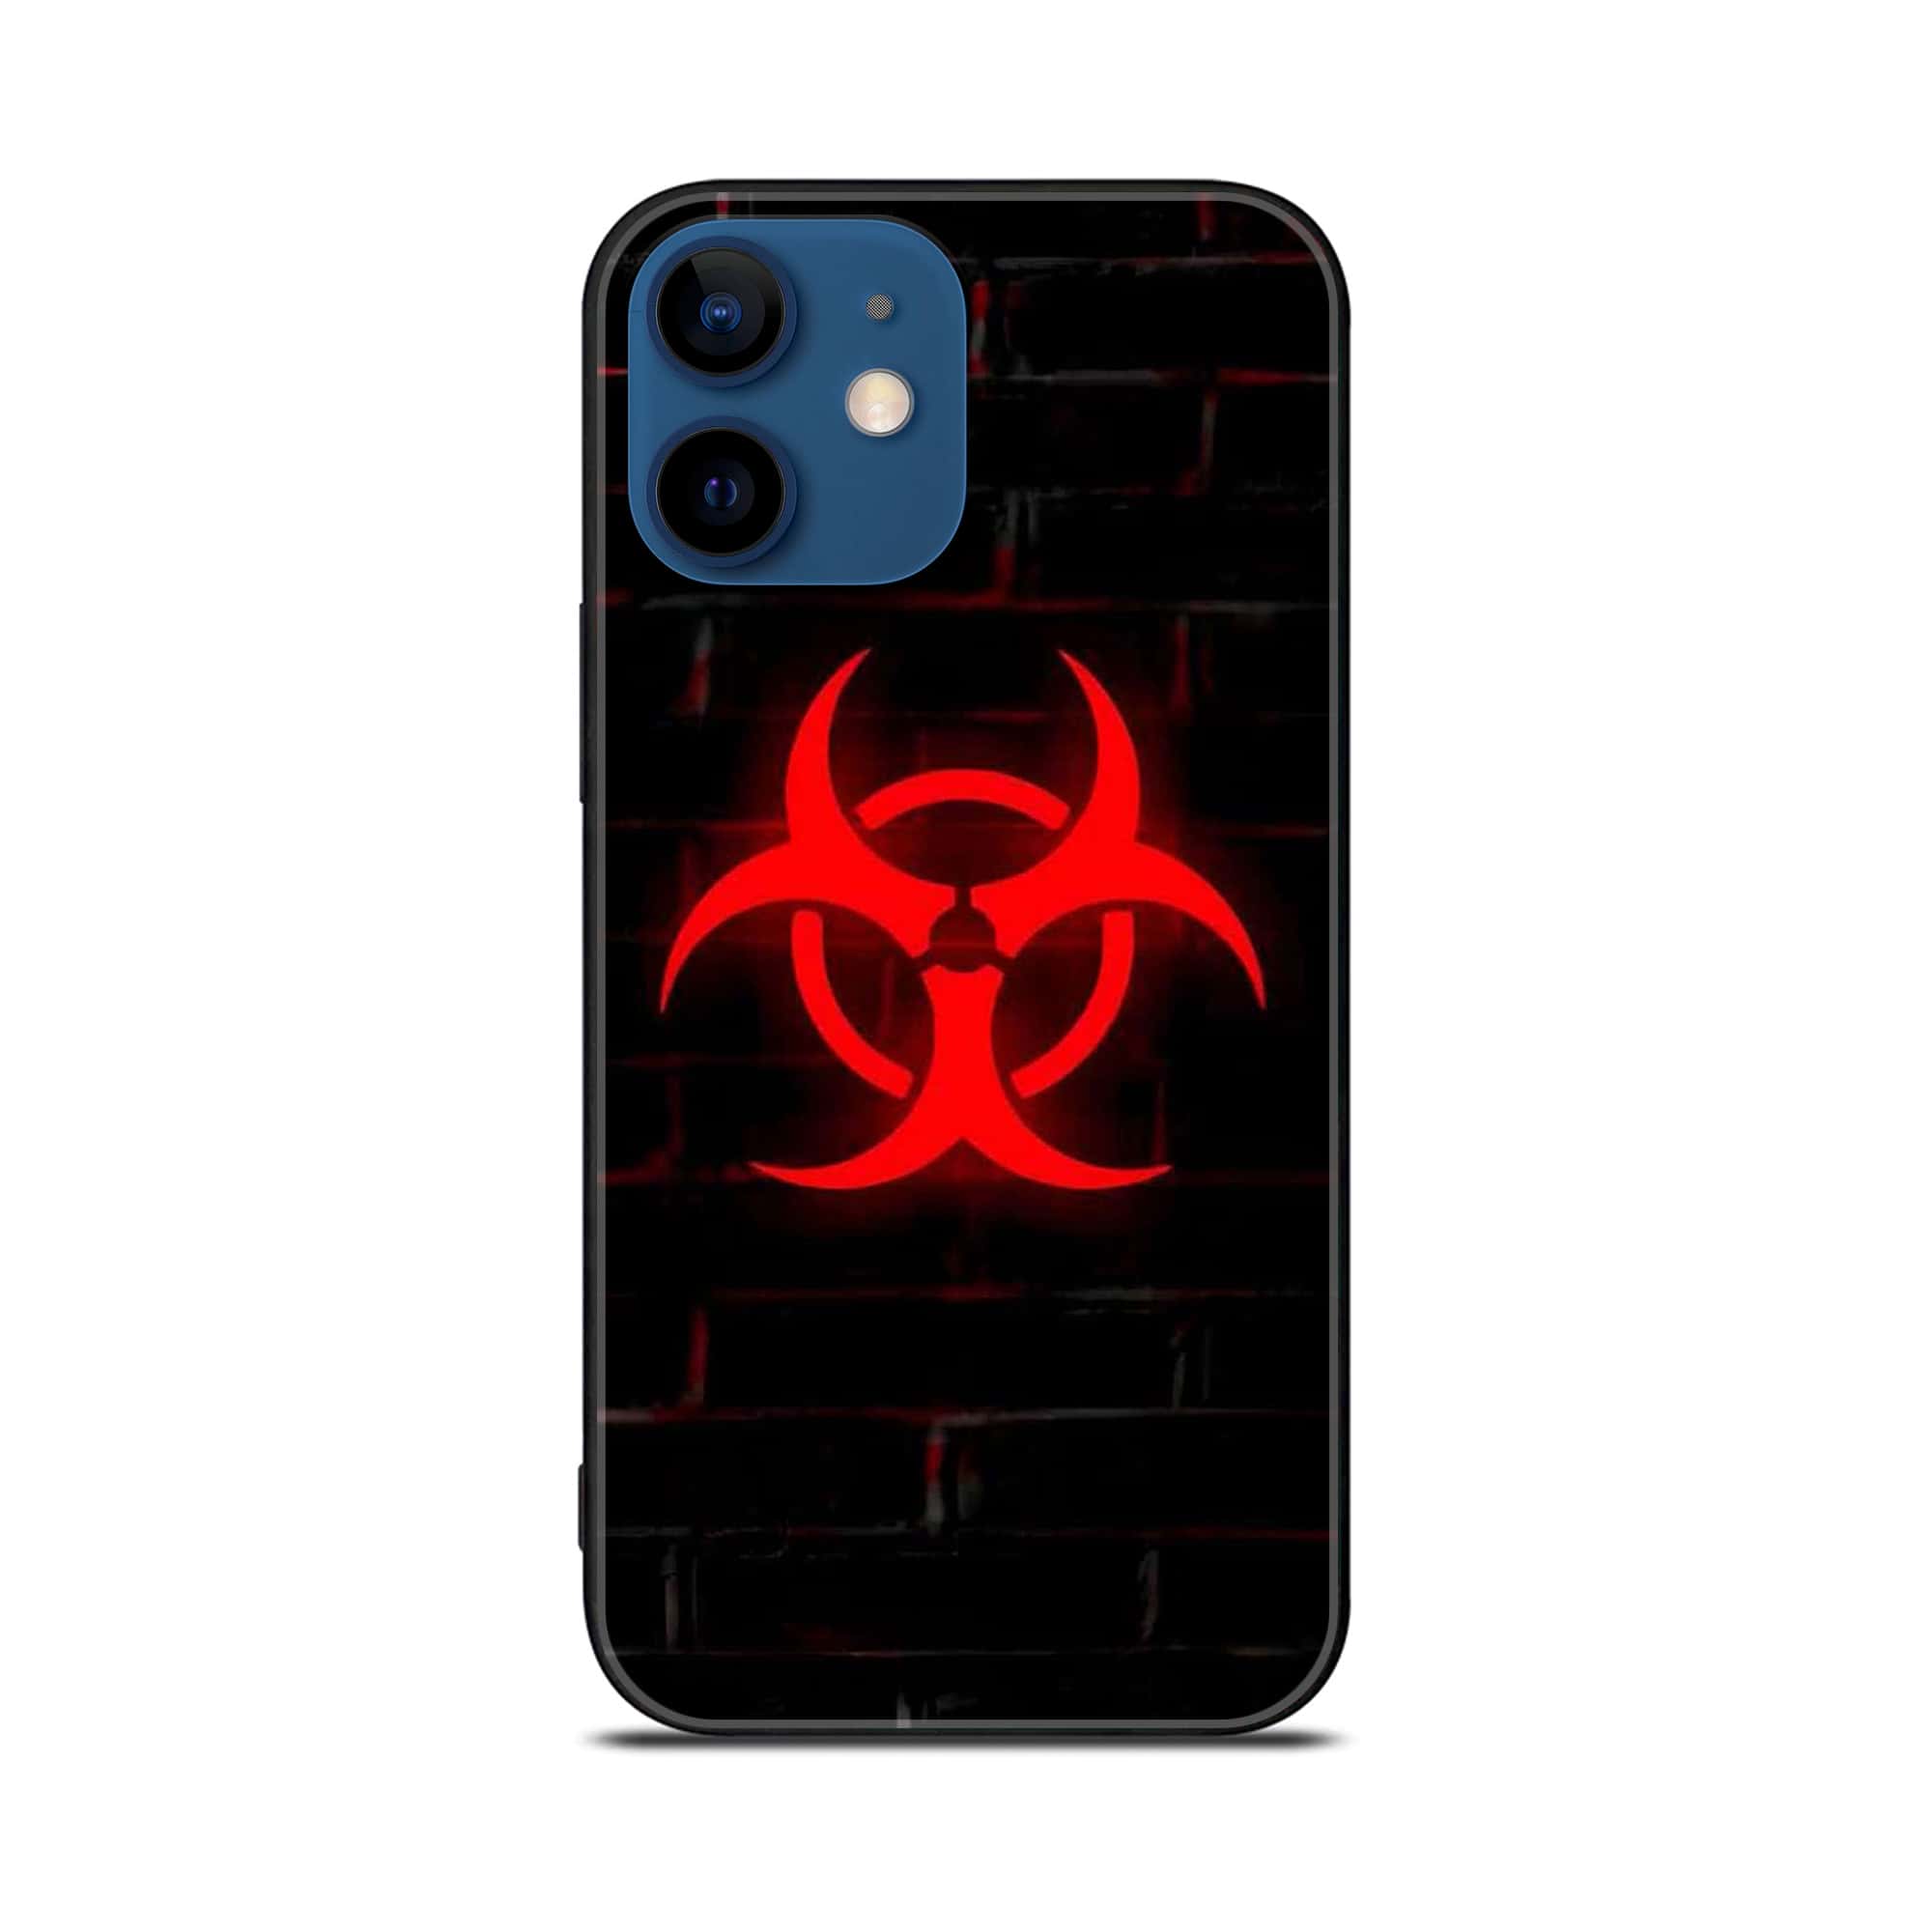 iPhone 12 Mini Biohazard Sign  Premium Printed Glass soft Bumper shock Proof Case